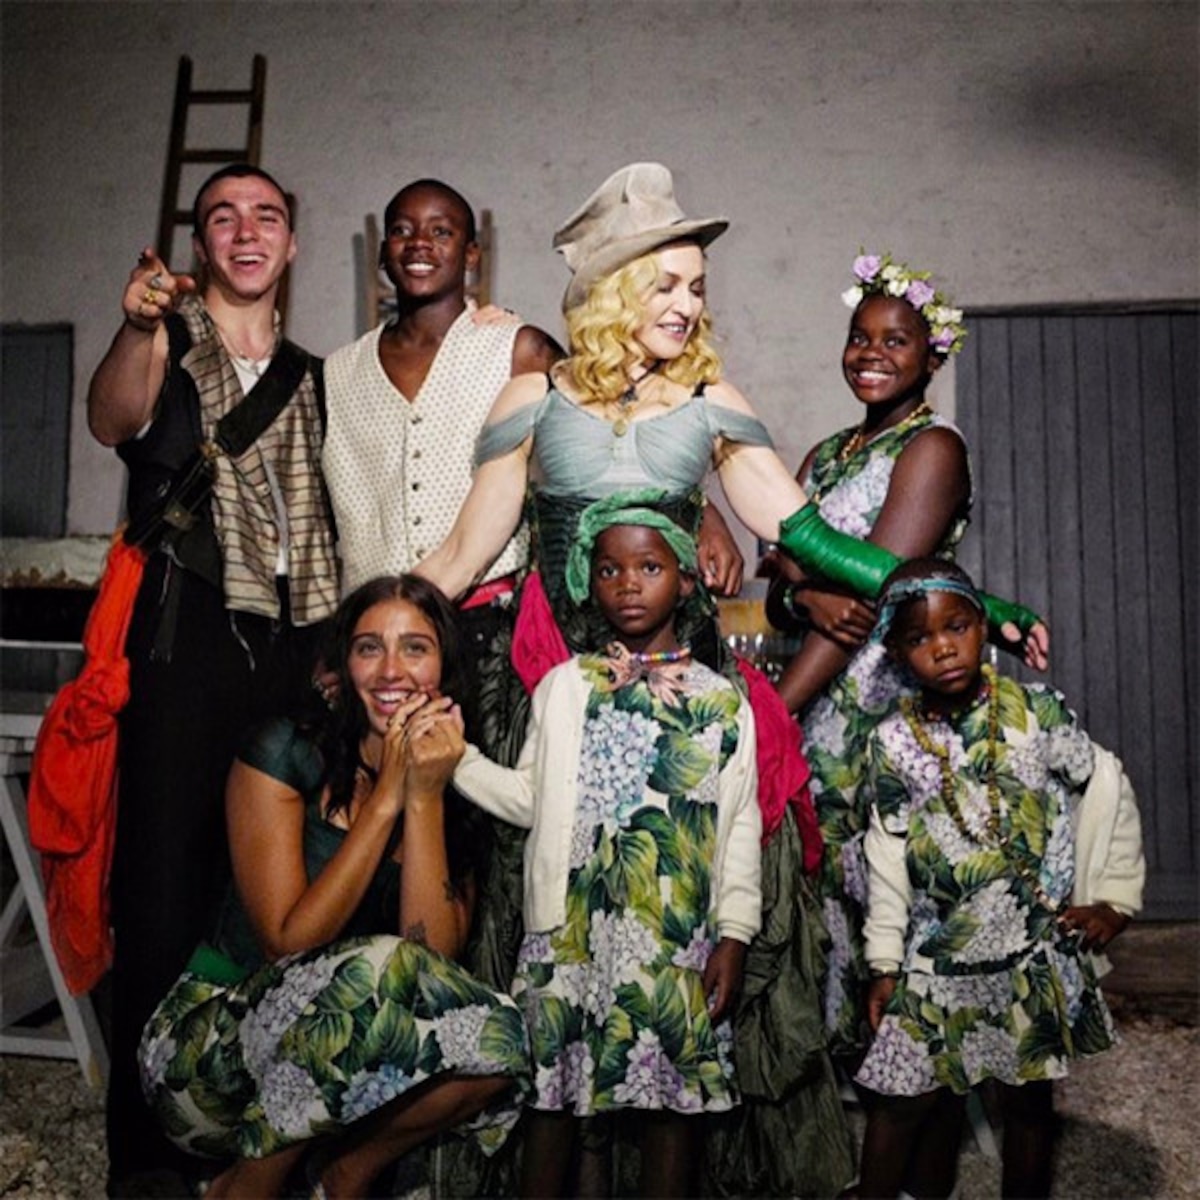 Madonna Shares Rare Family Photo With All 6 Kids - E! Online - CA